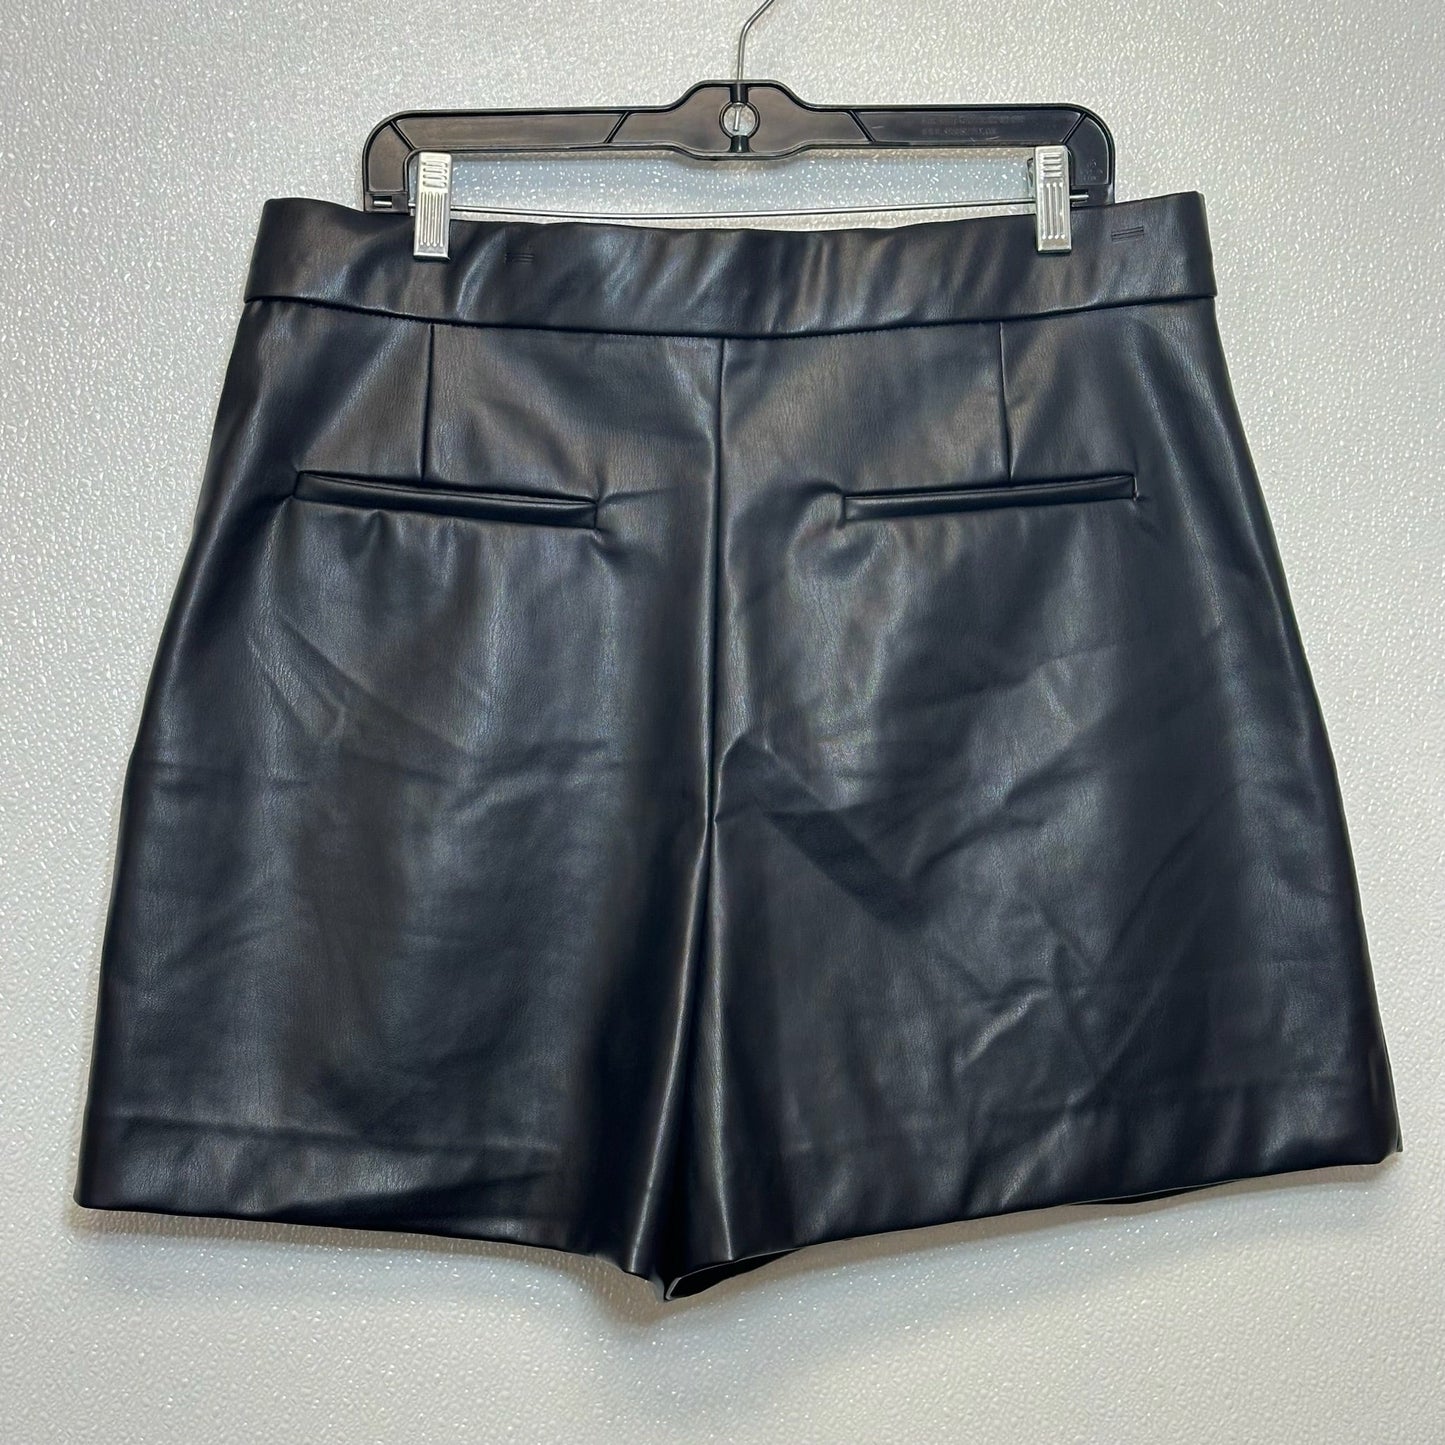 Shorts By Zara  Size: Xxl